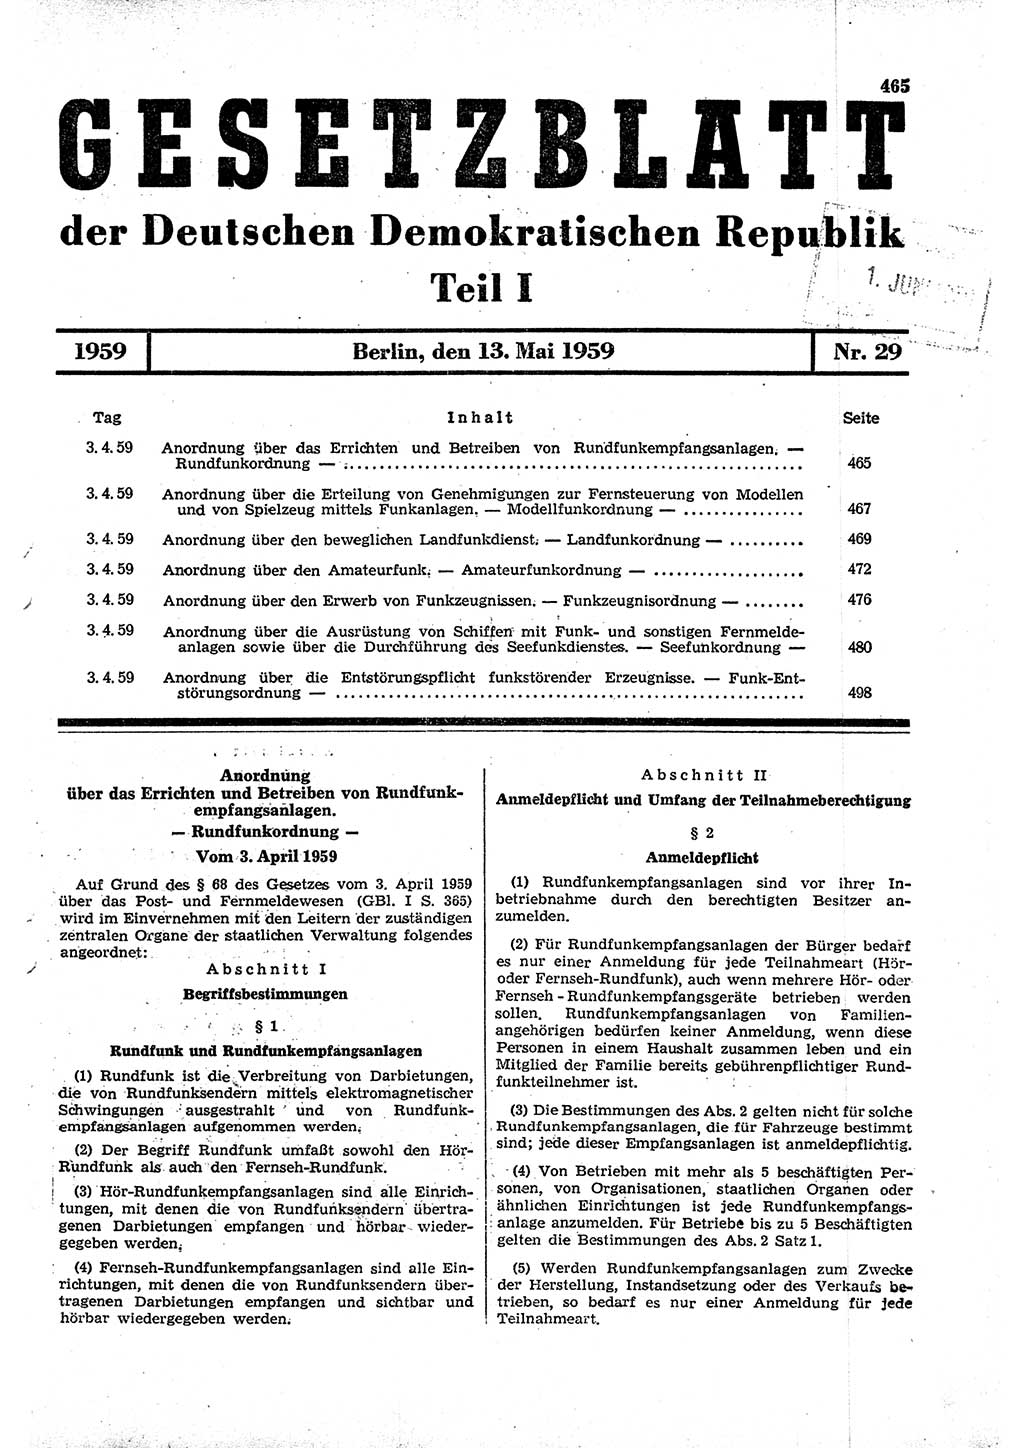 Gesetzblatt (GBl.) der Deutschen Demokratischen Republik (DDR) Teil Ⅰ 1959, Seite 465 (GBl. DDR Ⅰ 1959, S. 465)